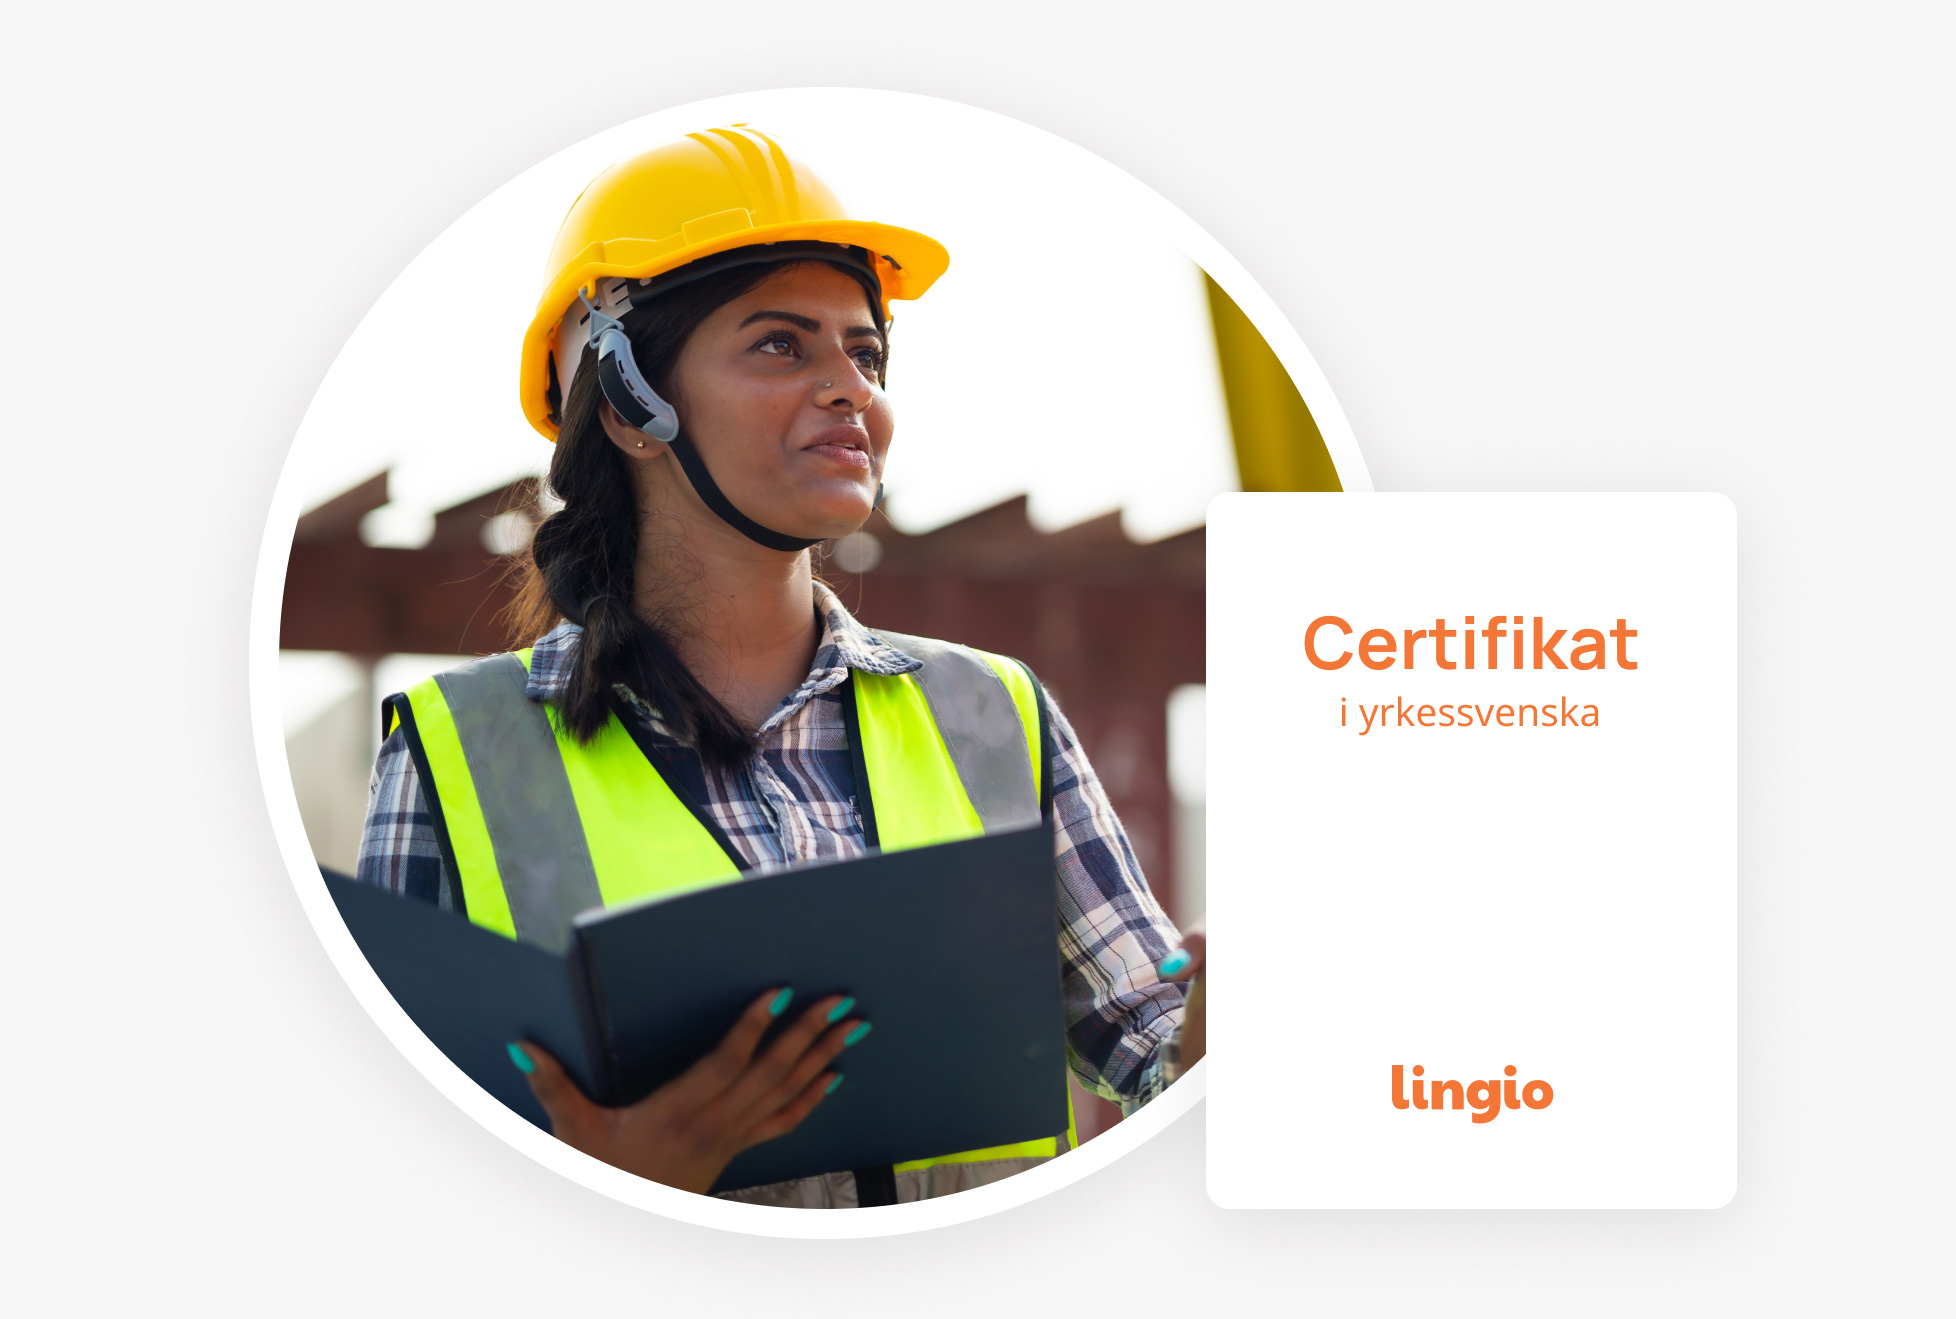 Kvinna i arbetskläder som stolt visar upp sitt certifikat i yrkessvenska från Lingio, ett bevis på uppnådda kursmål.